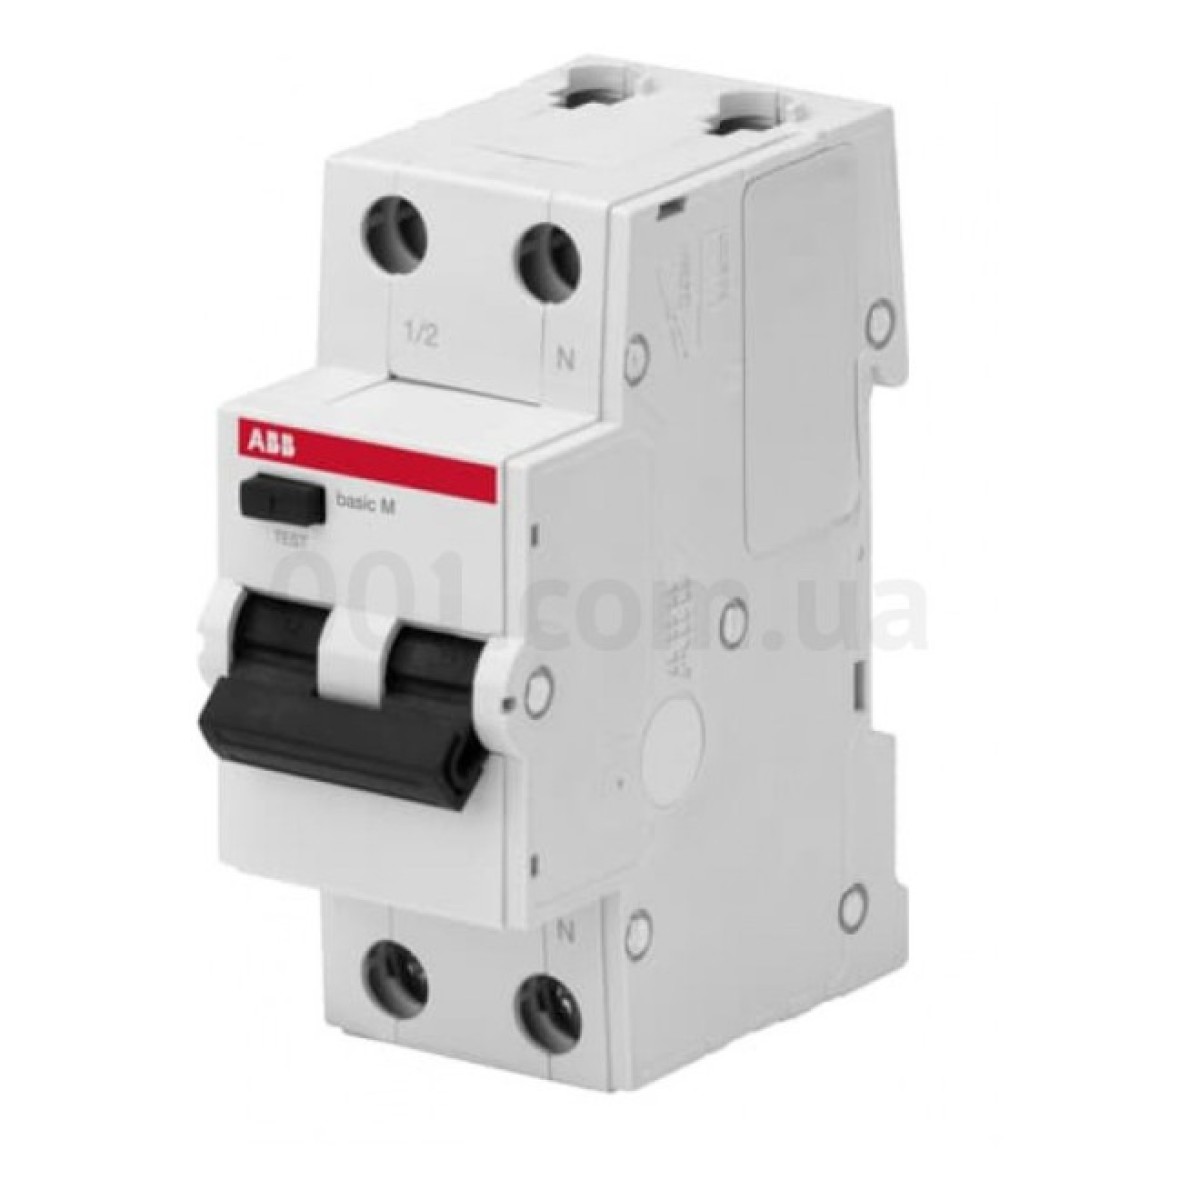 Автоматичний вимикач диференційного струму BMR415C10 1P+N/10А/30мА тип AC BASIC M, ABB 256_256.jpg